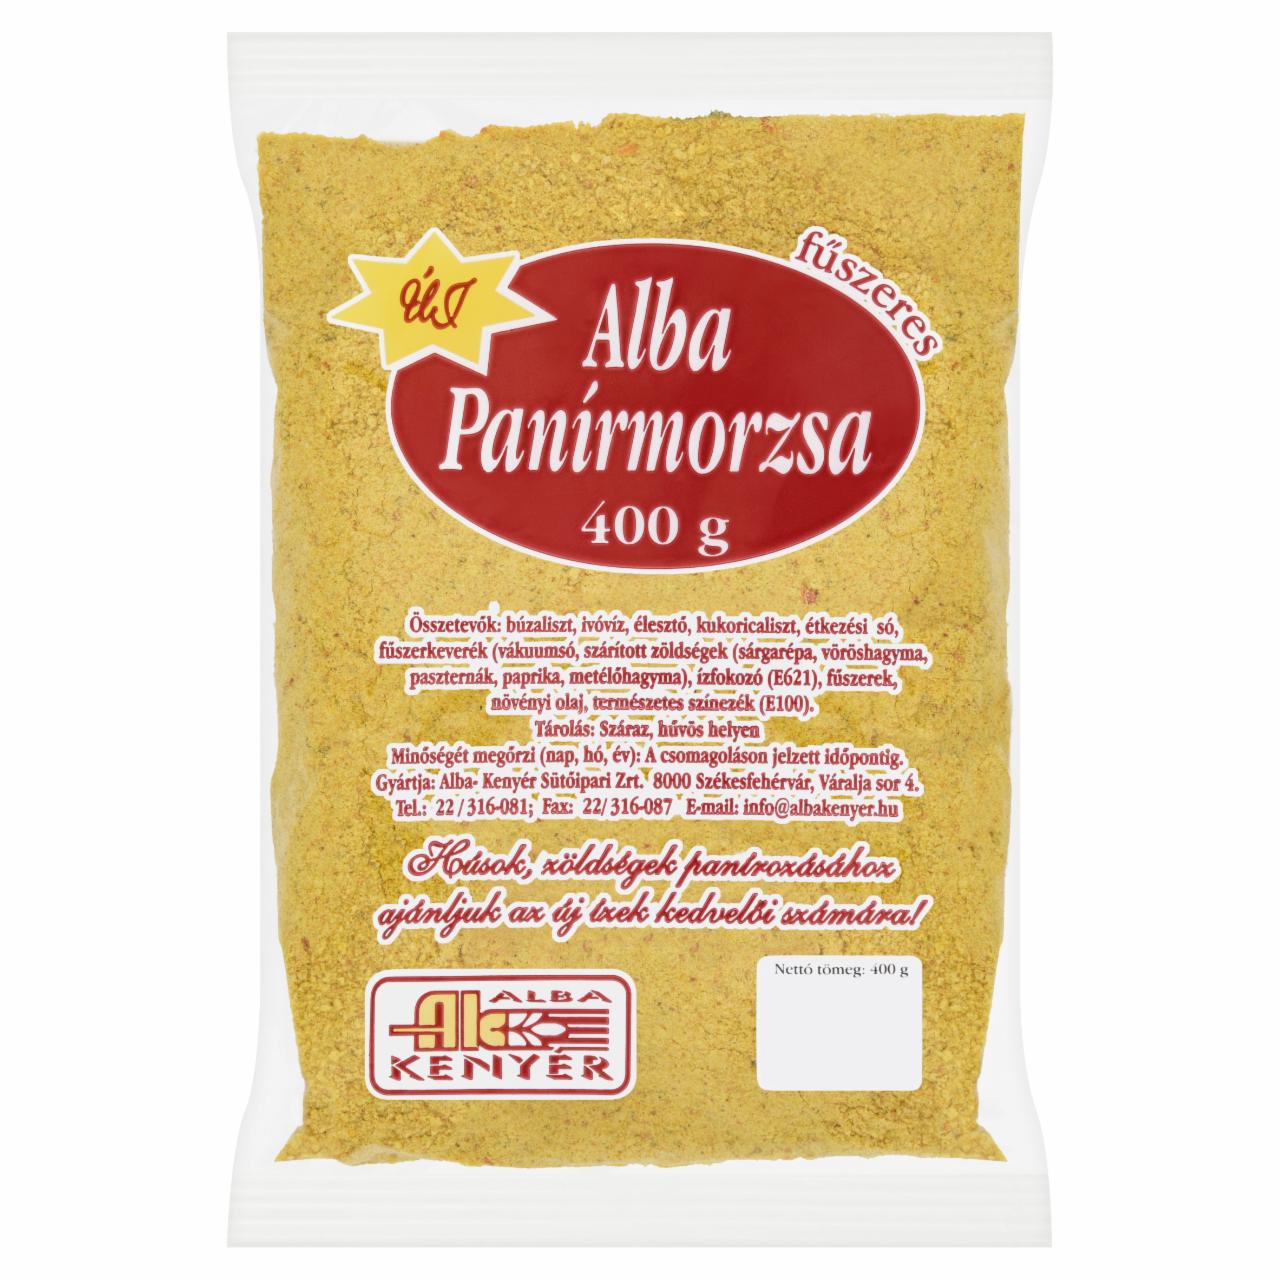 Képek - Alba fűszeres panírmorzsa 400 g